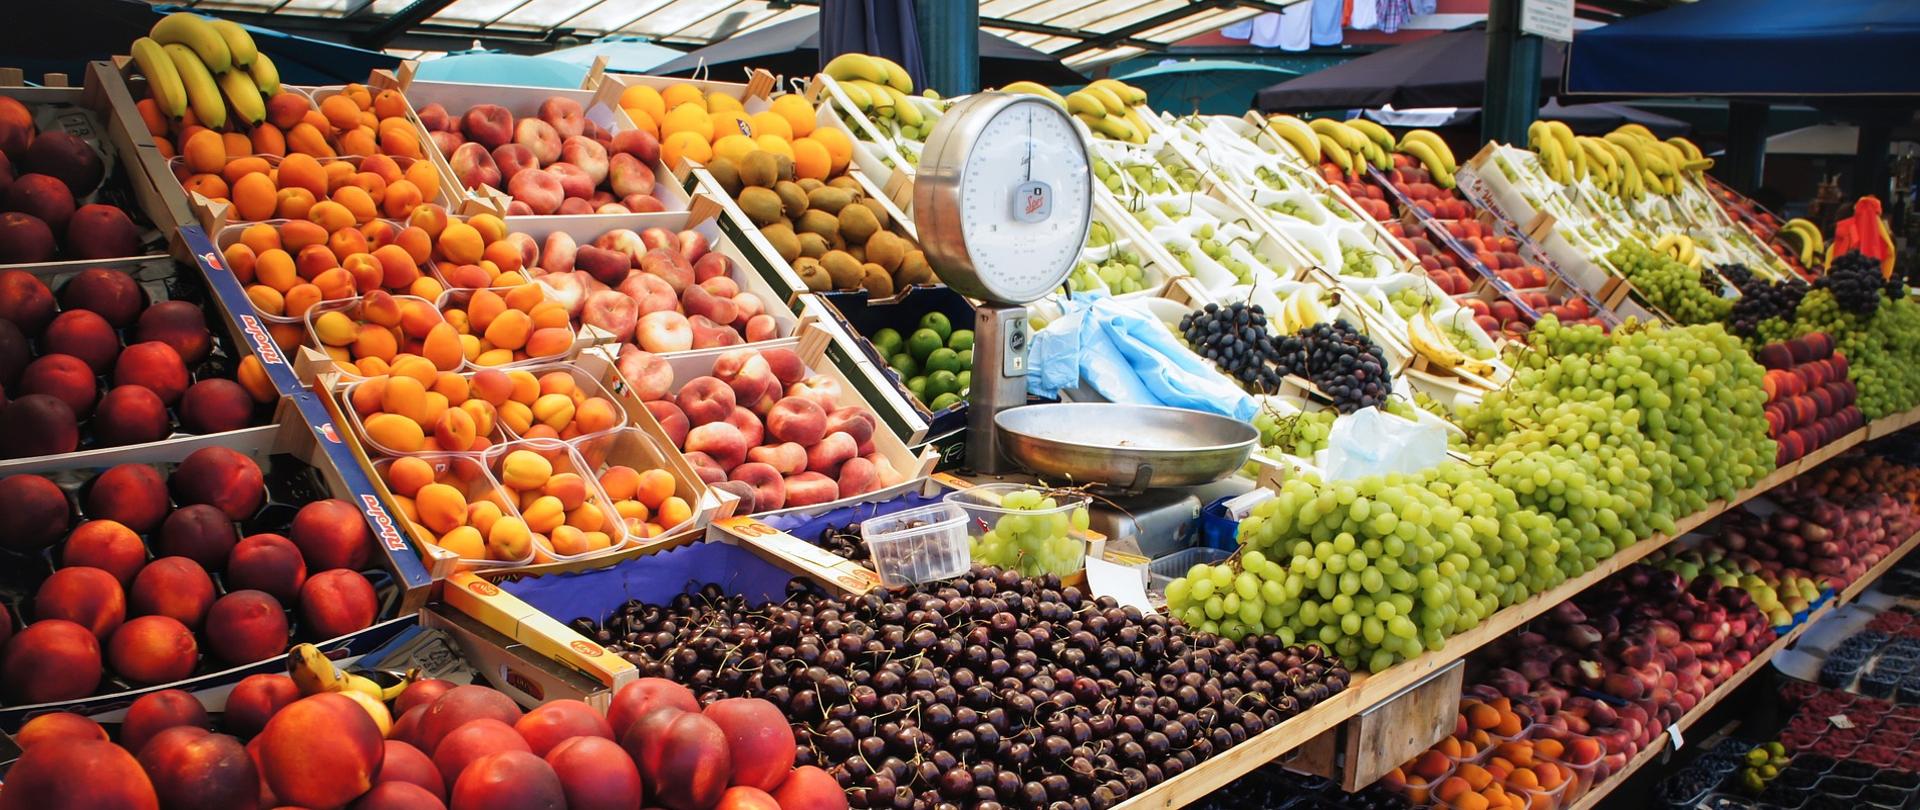 Na zdjęciu widok straganu z owocami. Stragan zlokalizowany jest wewnątrz hali targowej.